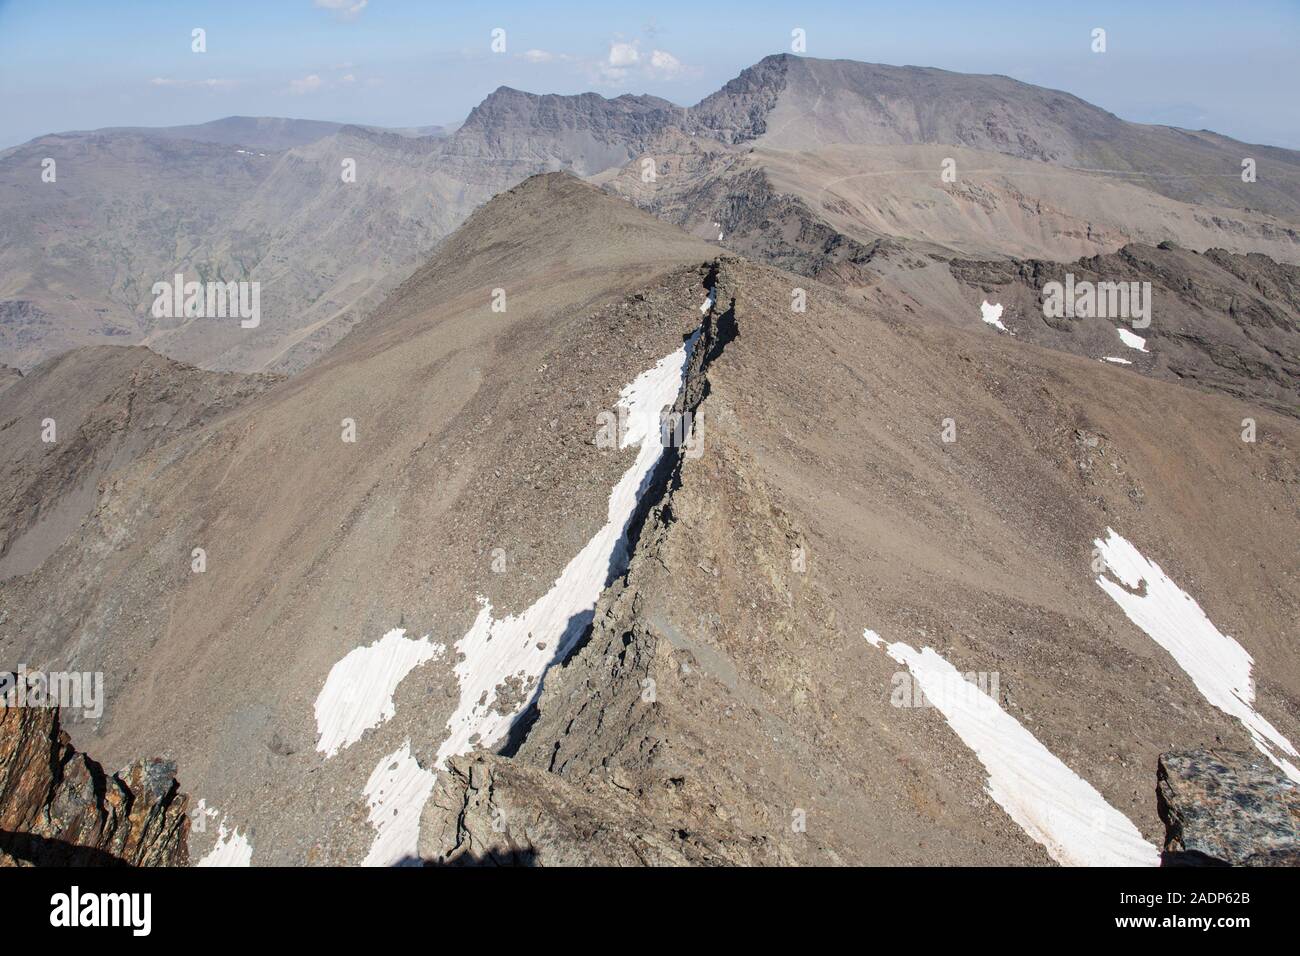 Les plus hauts sommets de la chaîne de montagnes de la Sierra Nevada, vus du sommet de Pico Veleta en été, Andalousie, Espagne Banque D'Images